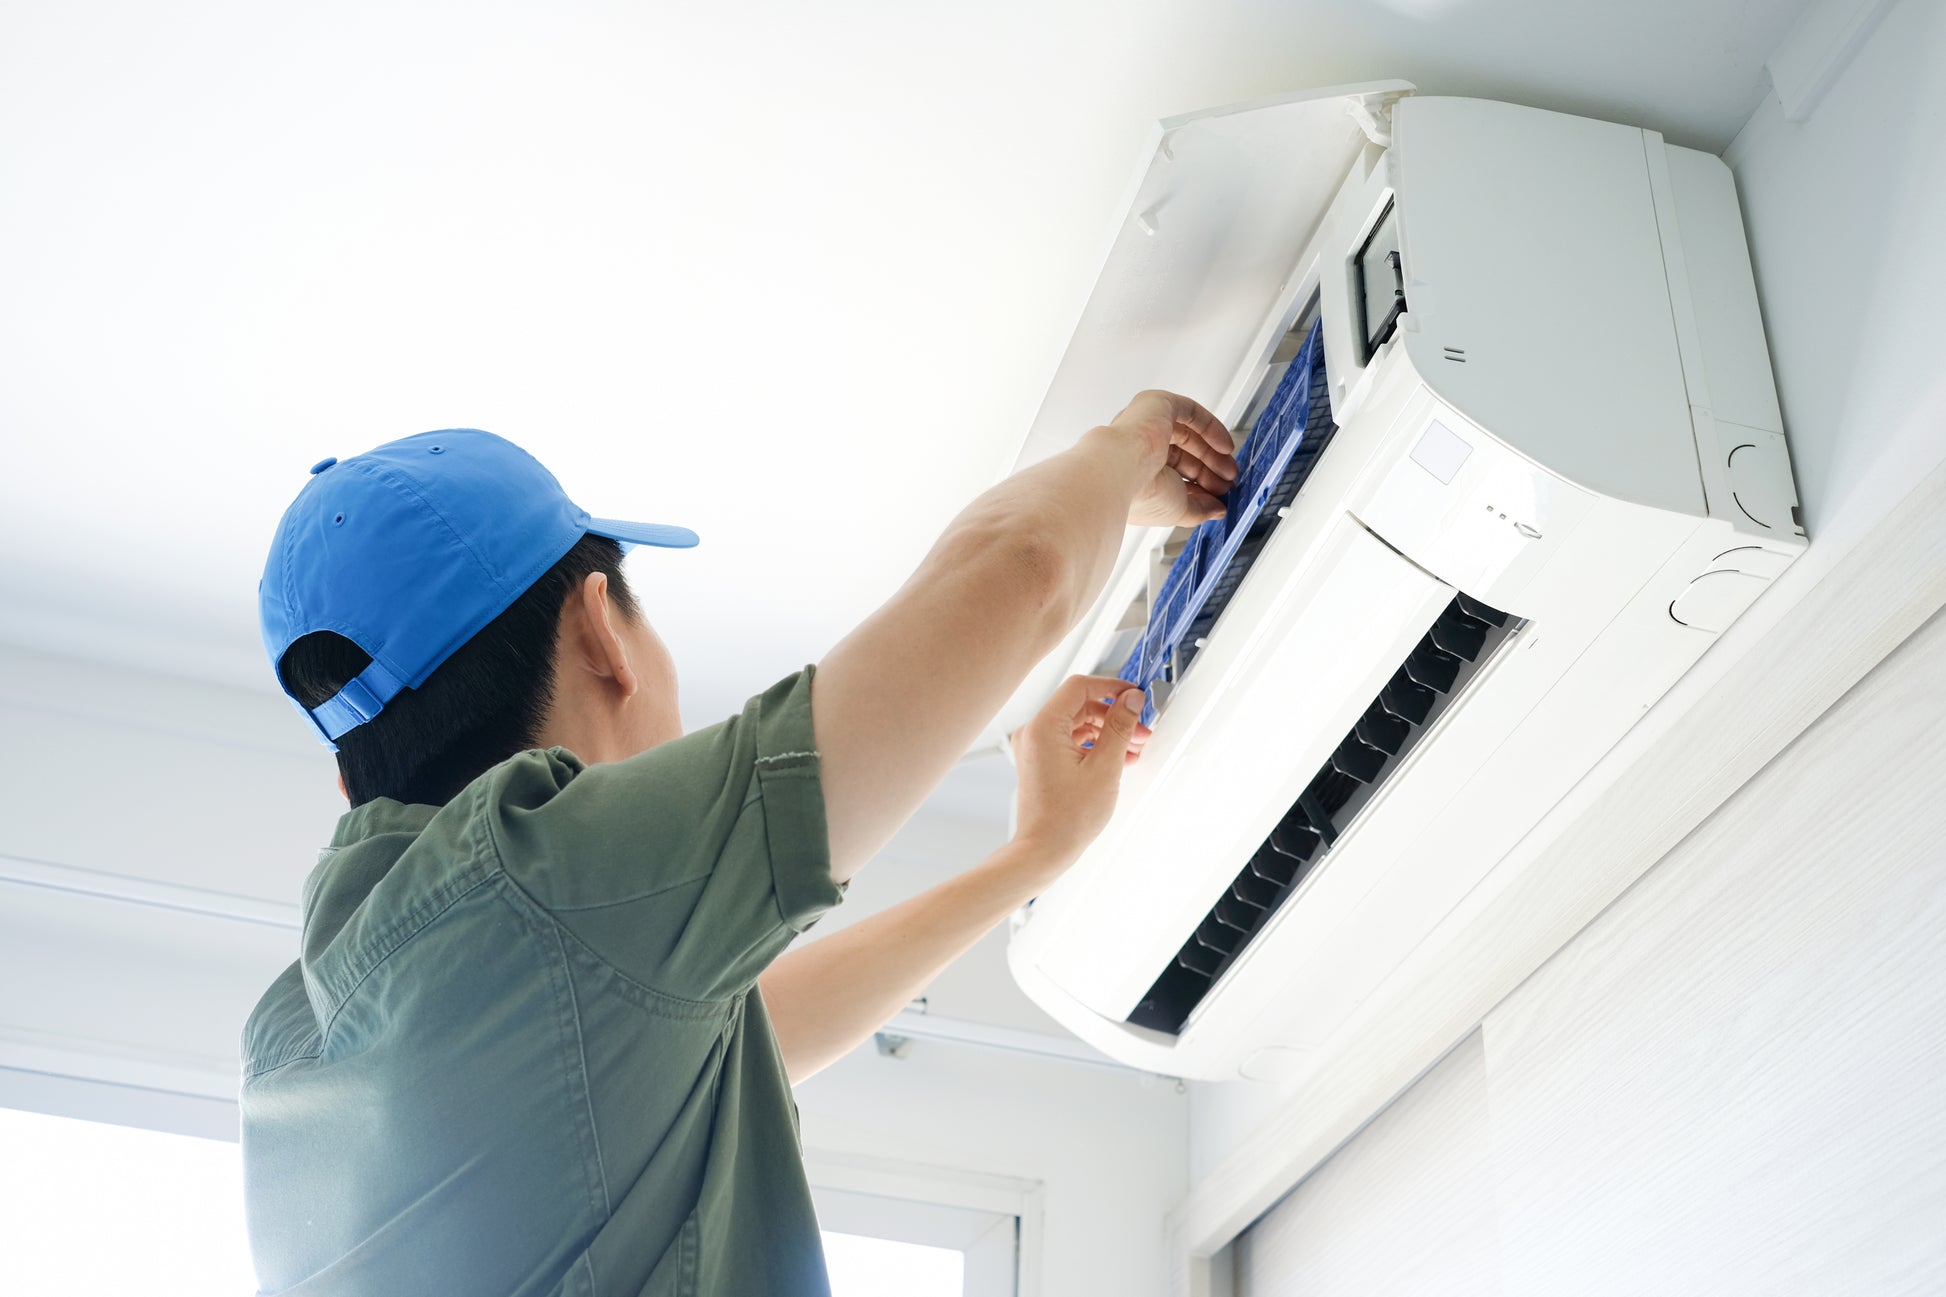 一名男子在裕利工程的房間內安裝冷氣工程空調。